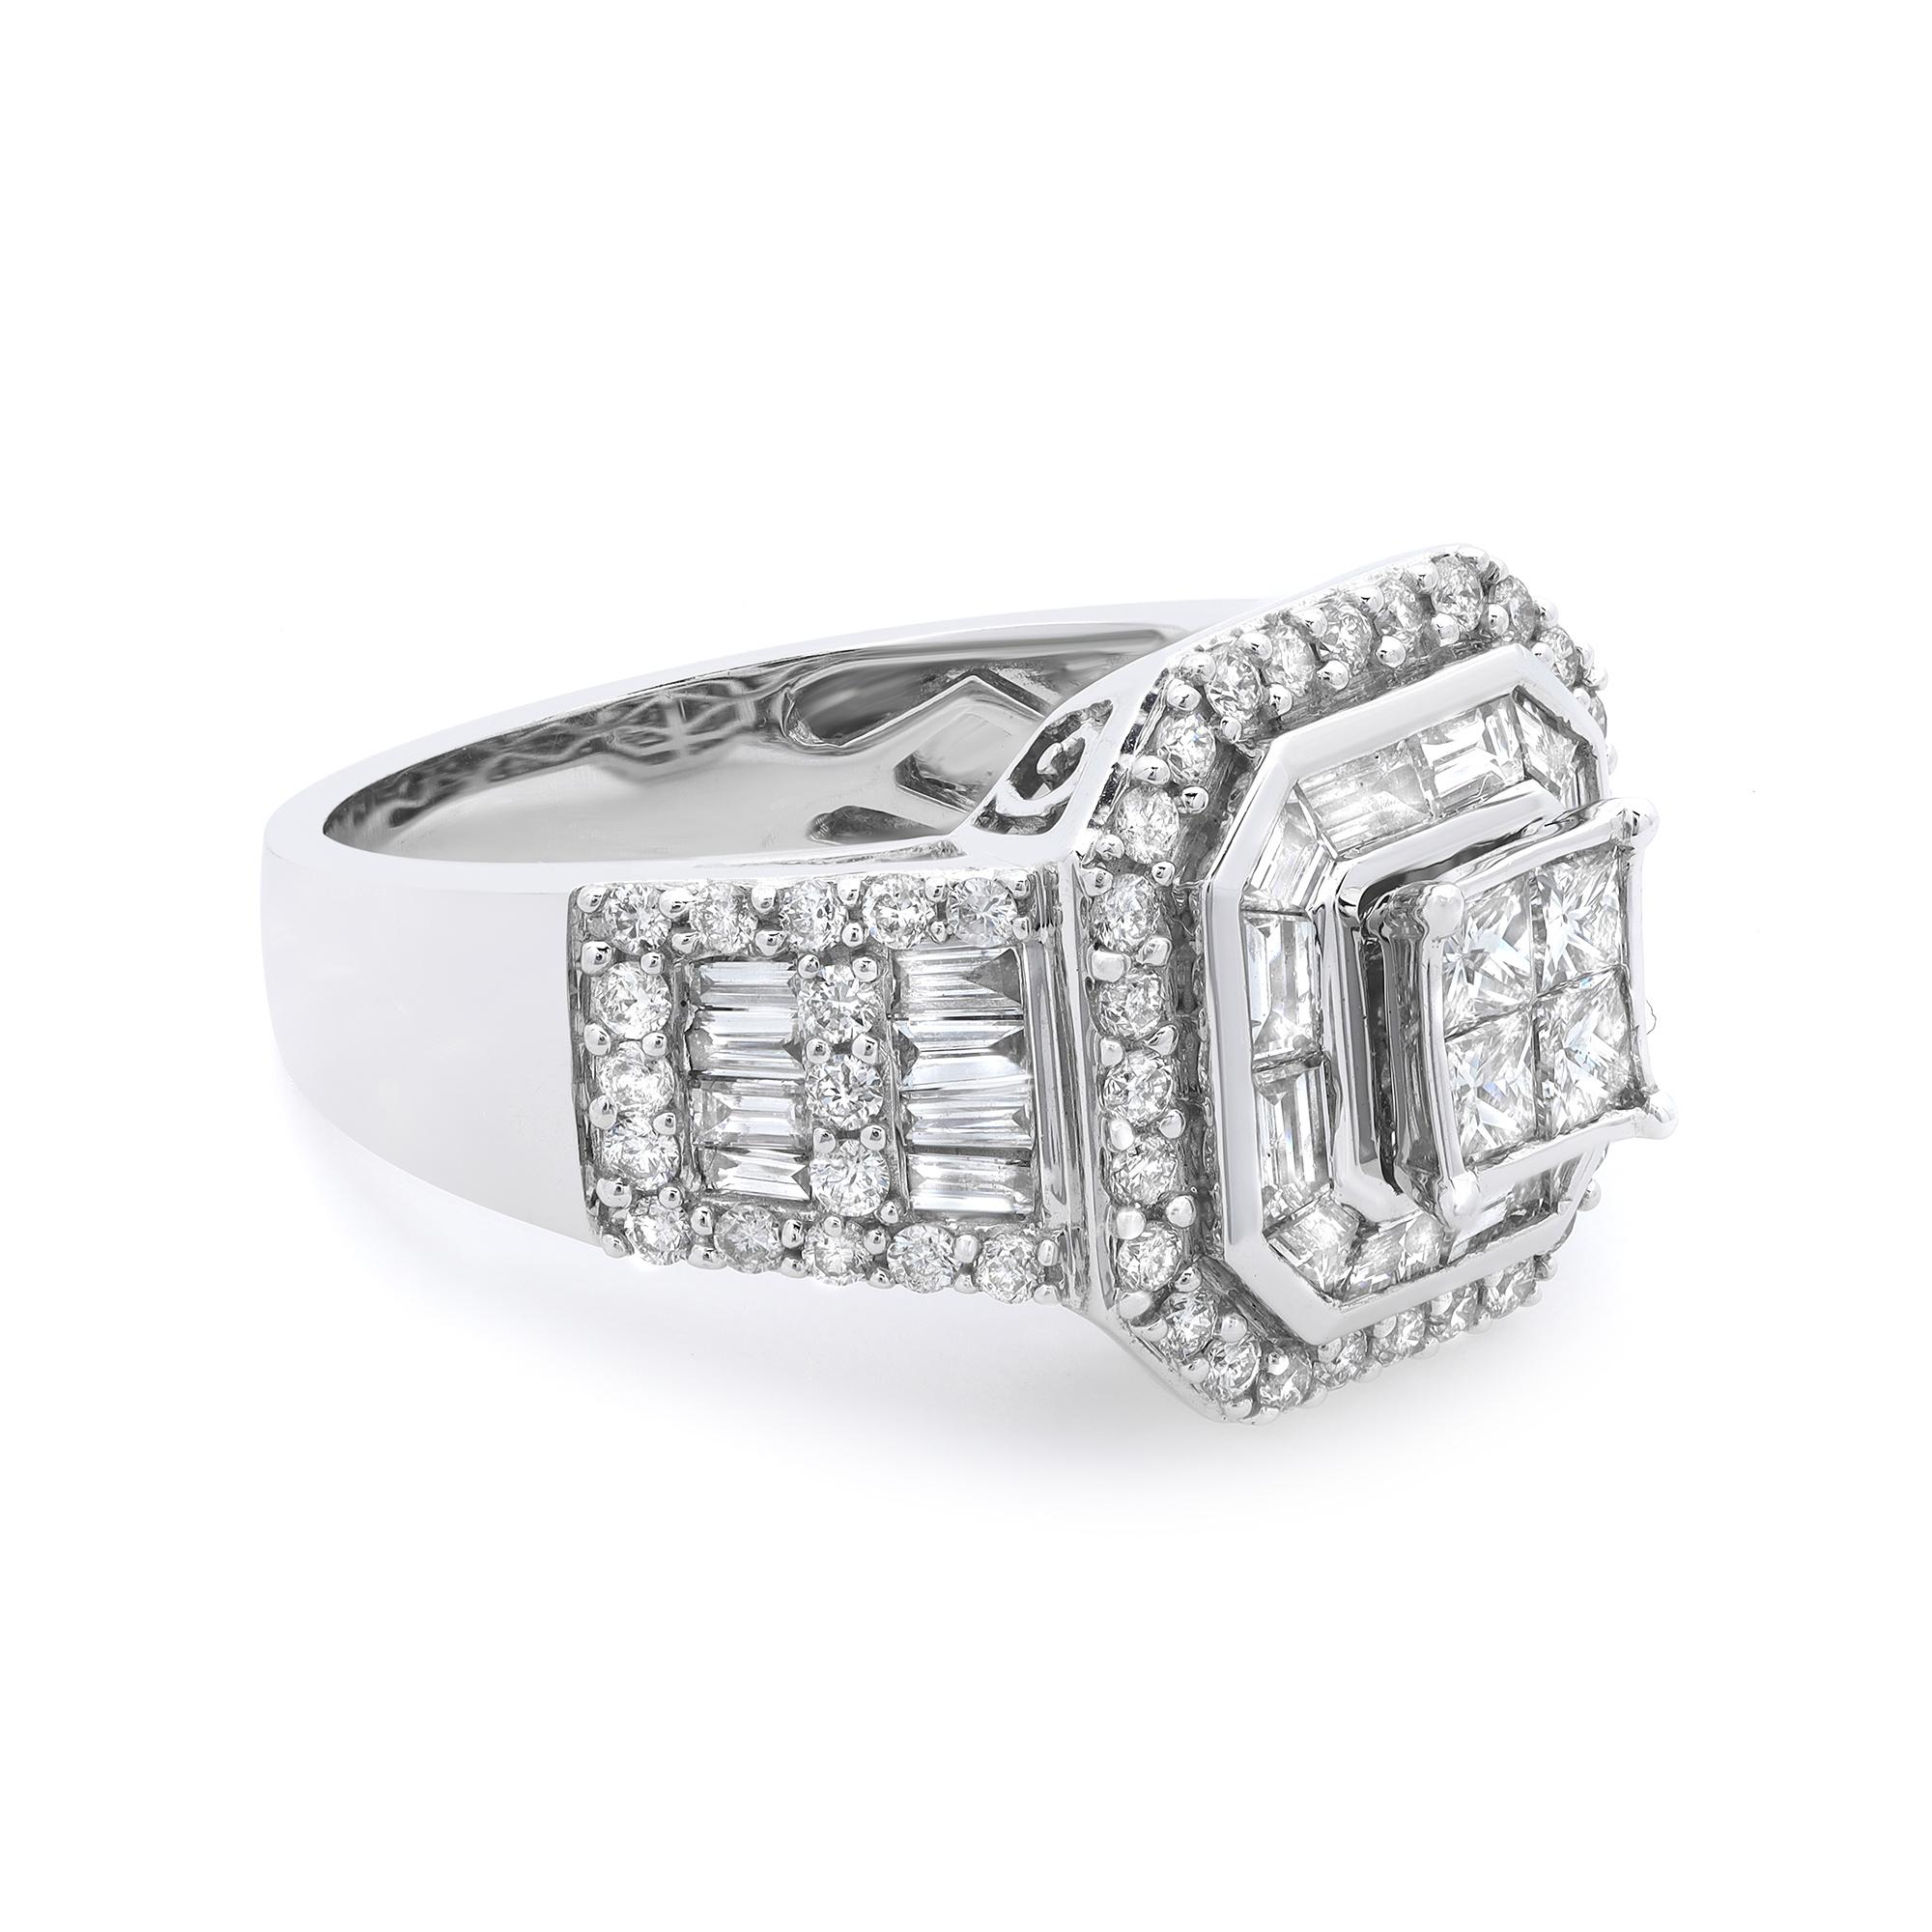 Cette magnifique bague de fiançailles en diamant contient exceptionnellement quatre diamants centraux de taille princesse. Pour ajouter de la grâce à l'anneau, la tige est incrustée de diamants baguettes et de diamants ronds de taille brillant